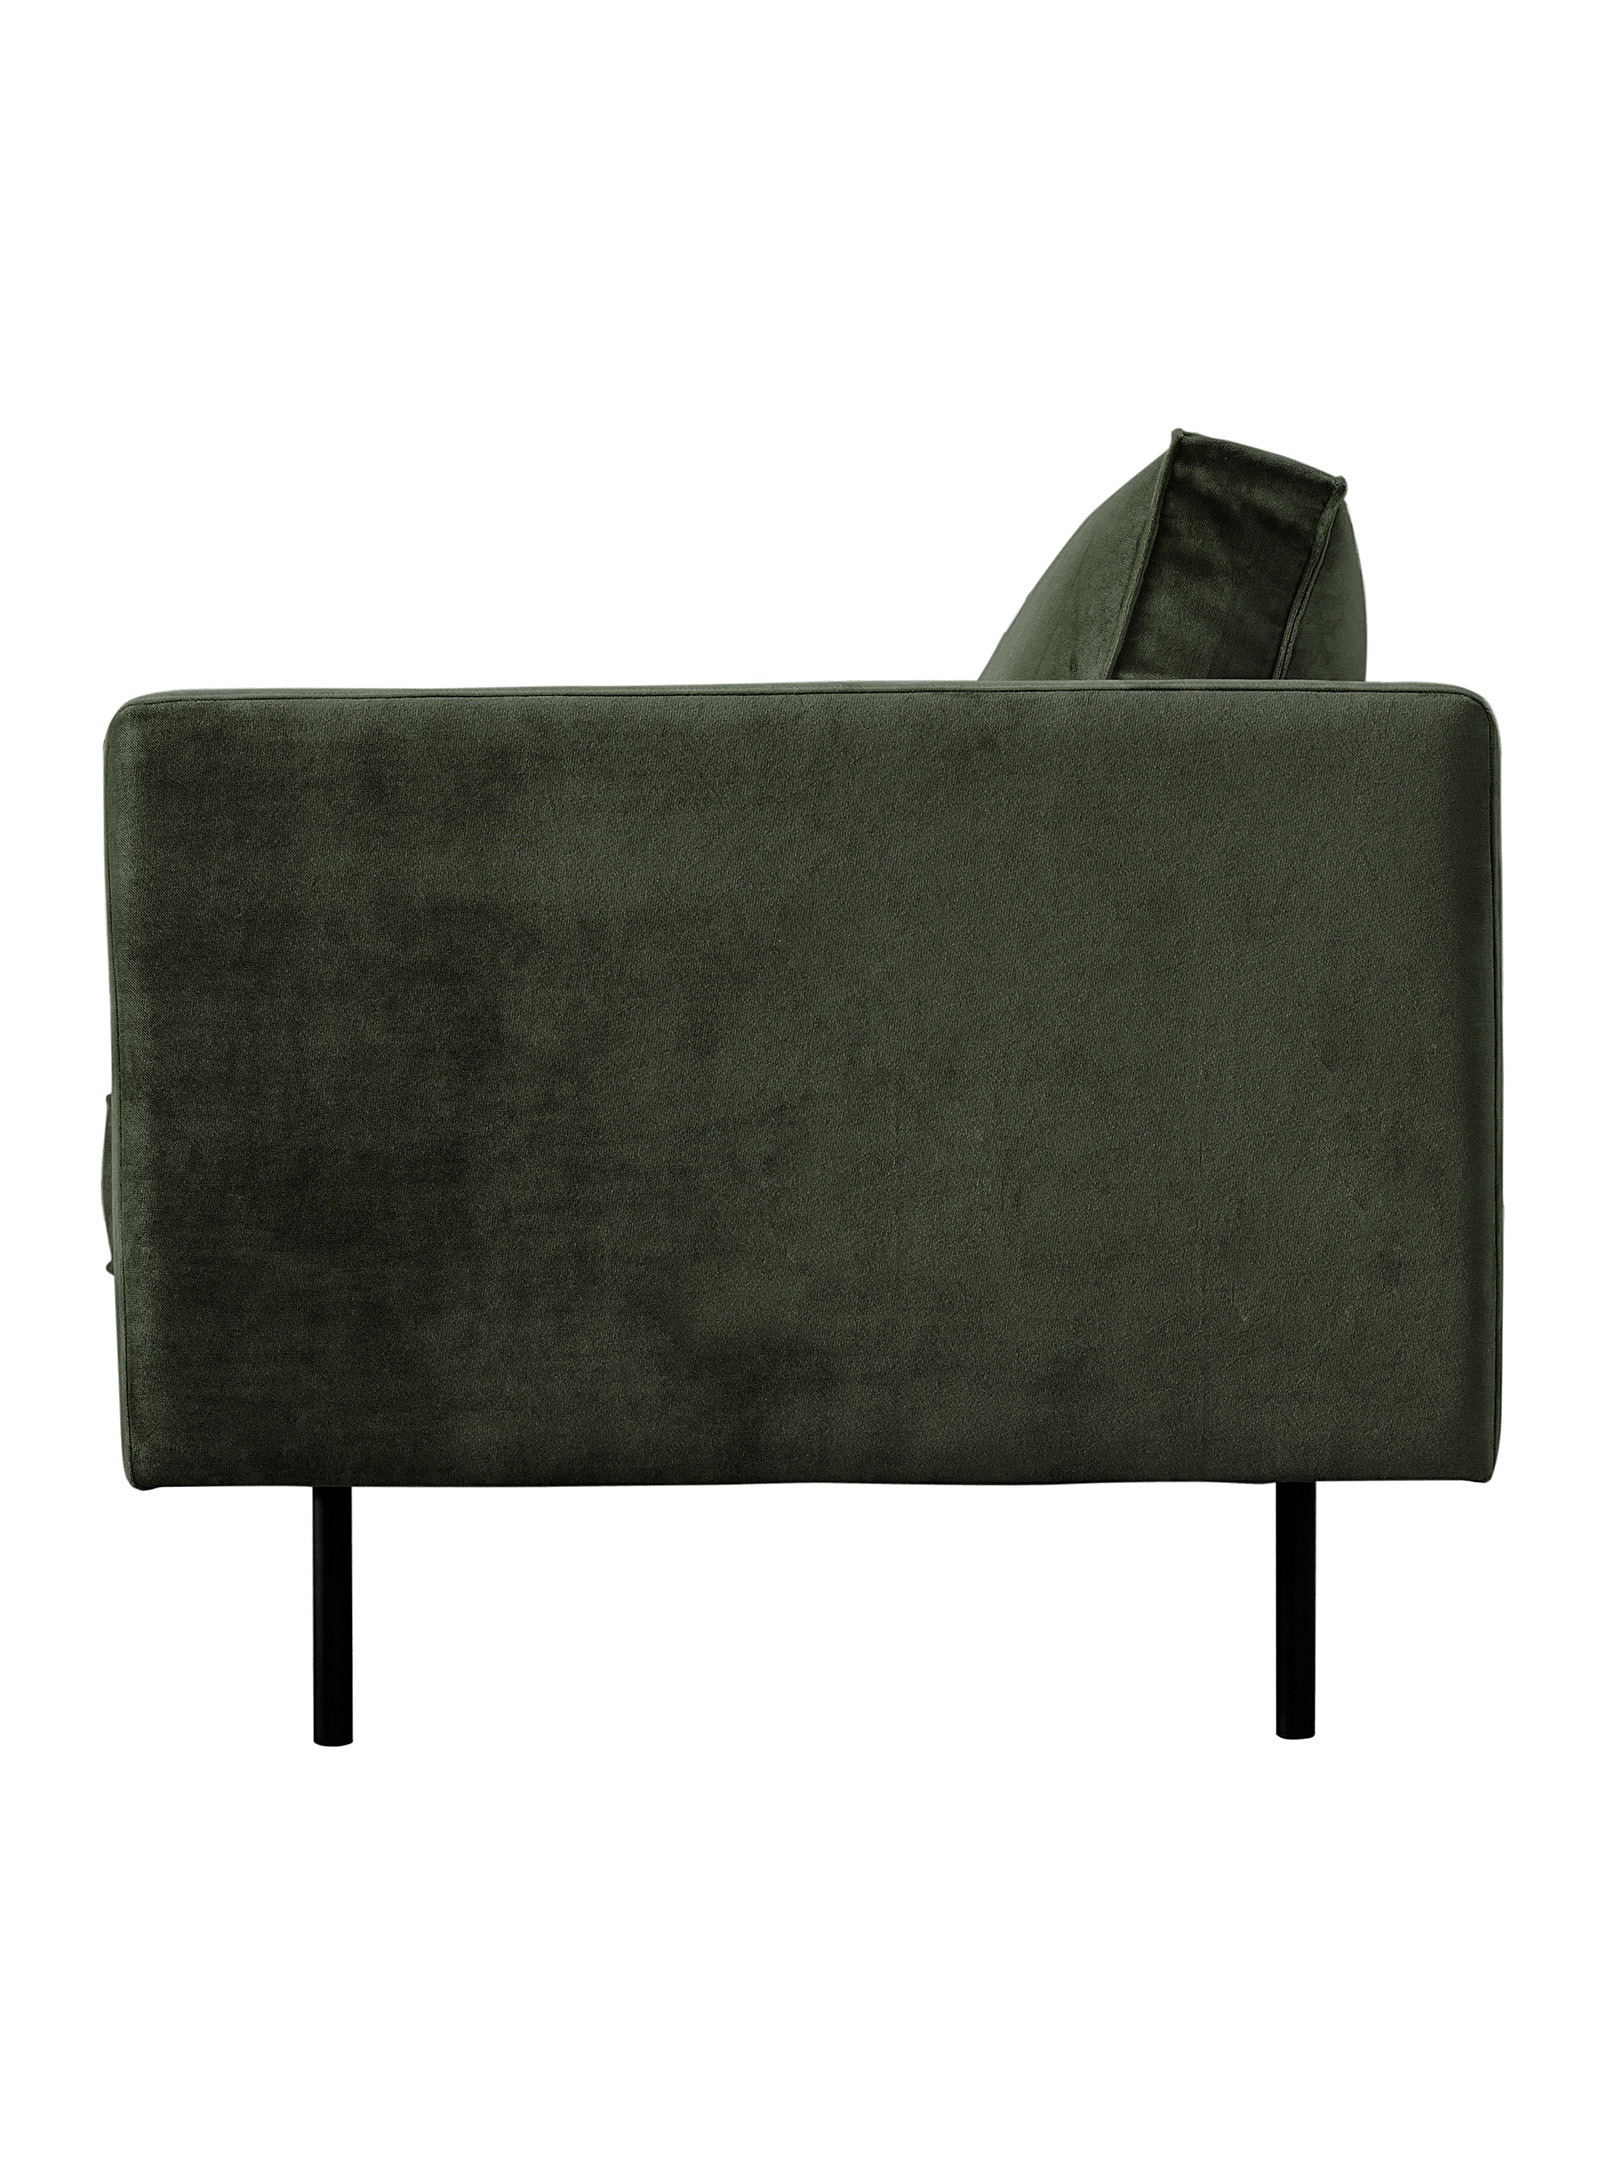 Moe's Home Collection - Le canapé minimaliste Raphael